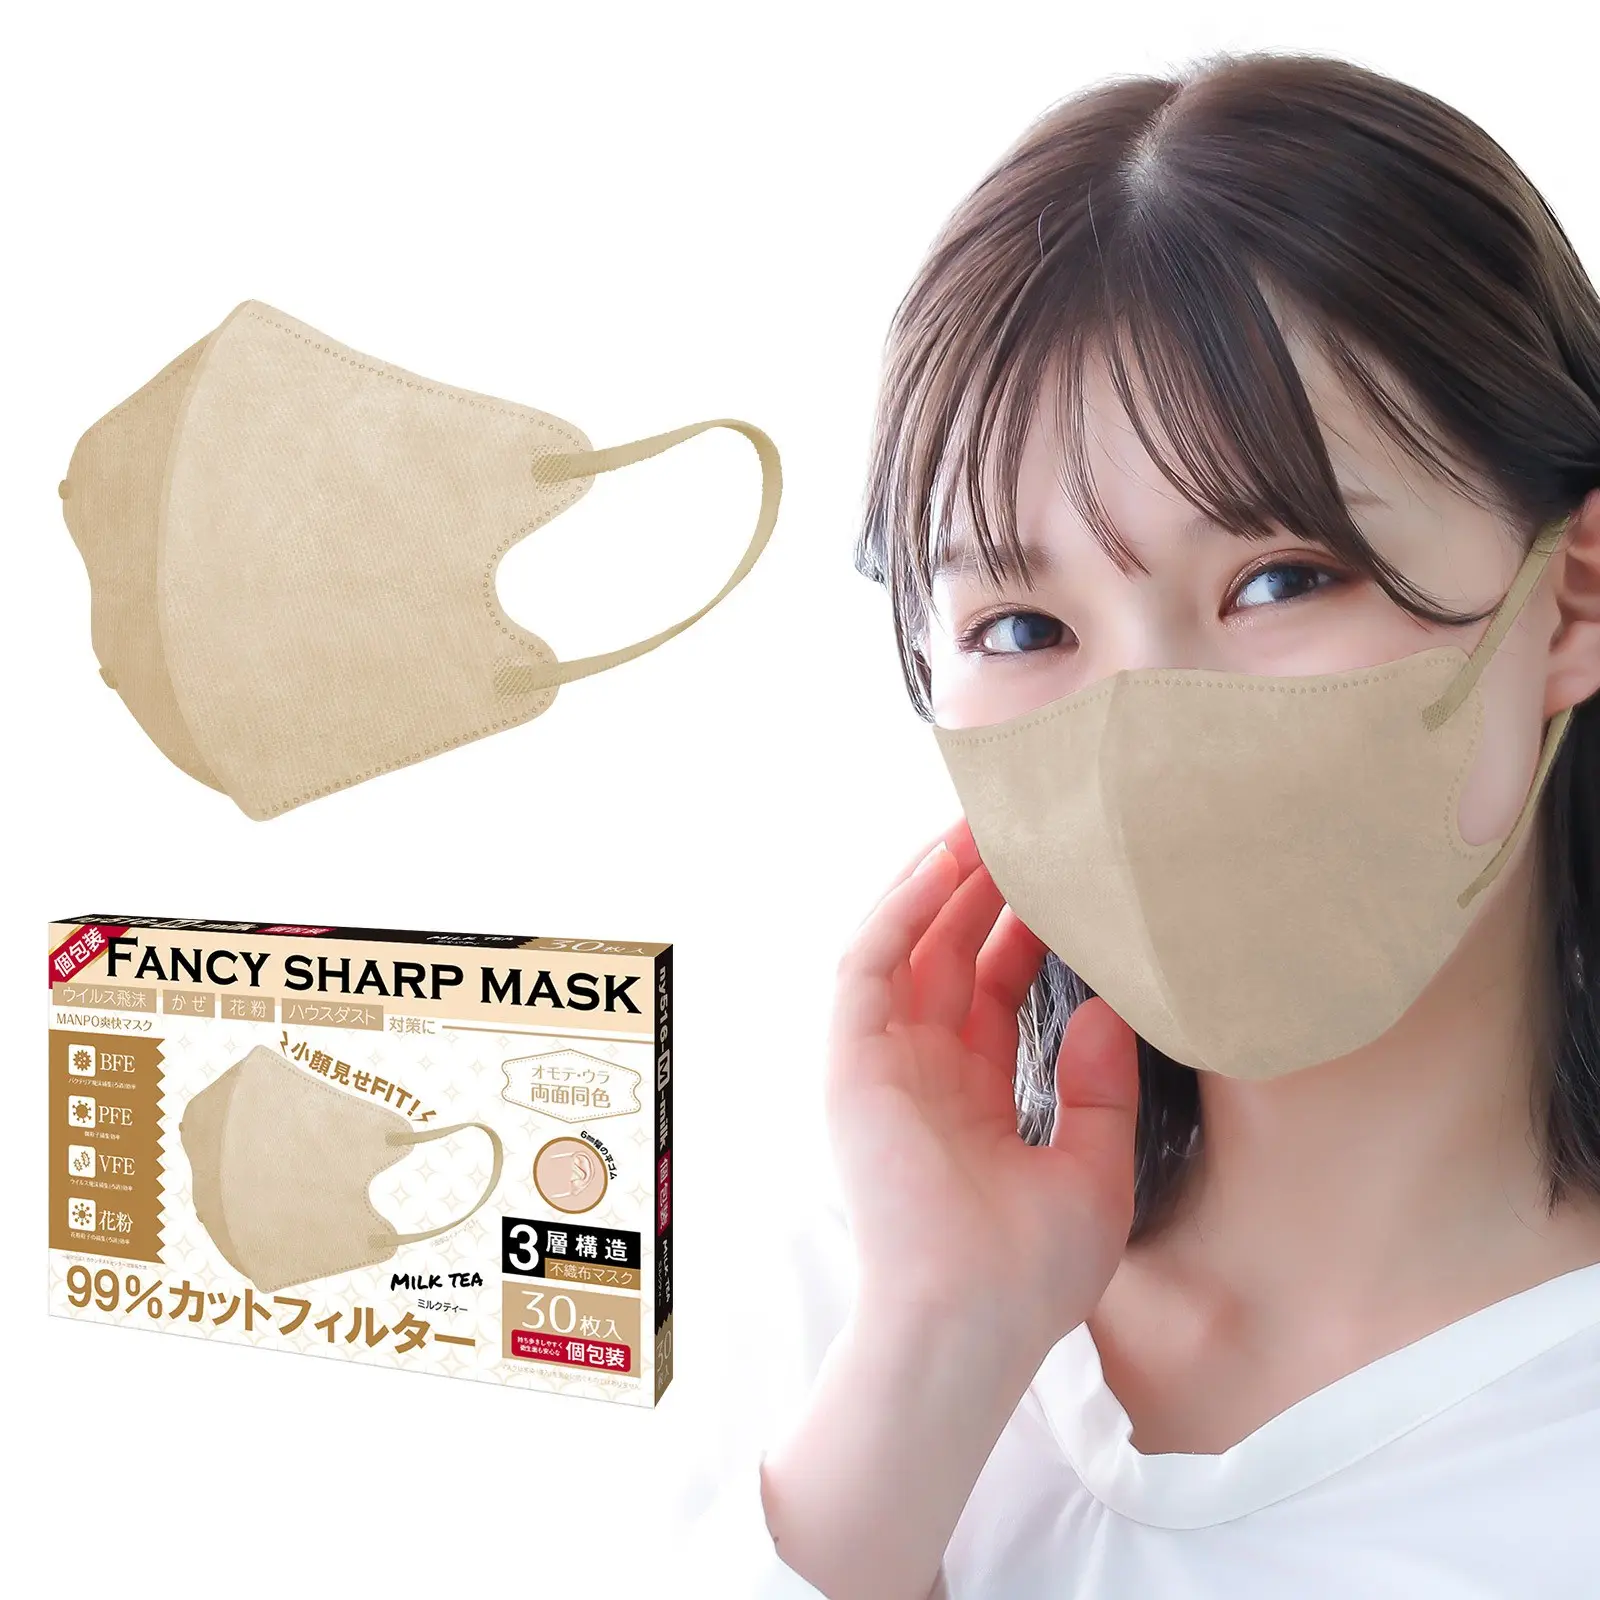 Masker pelindung debu tiga dimensi 3D, satu kali tiga lapis desain debu keamanan lembut sensual murni Jepang